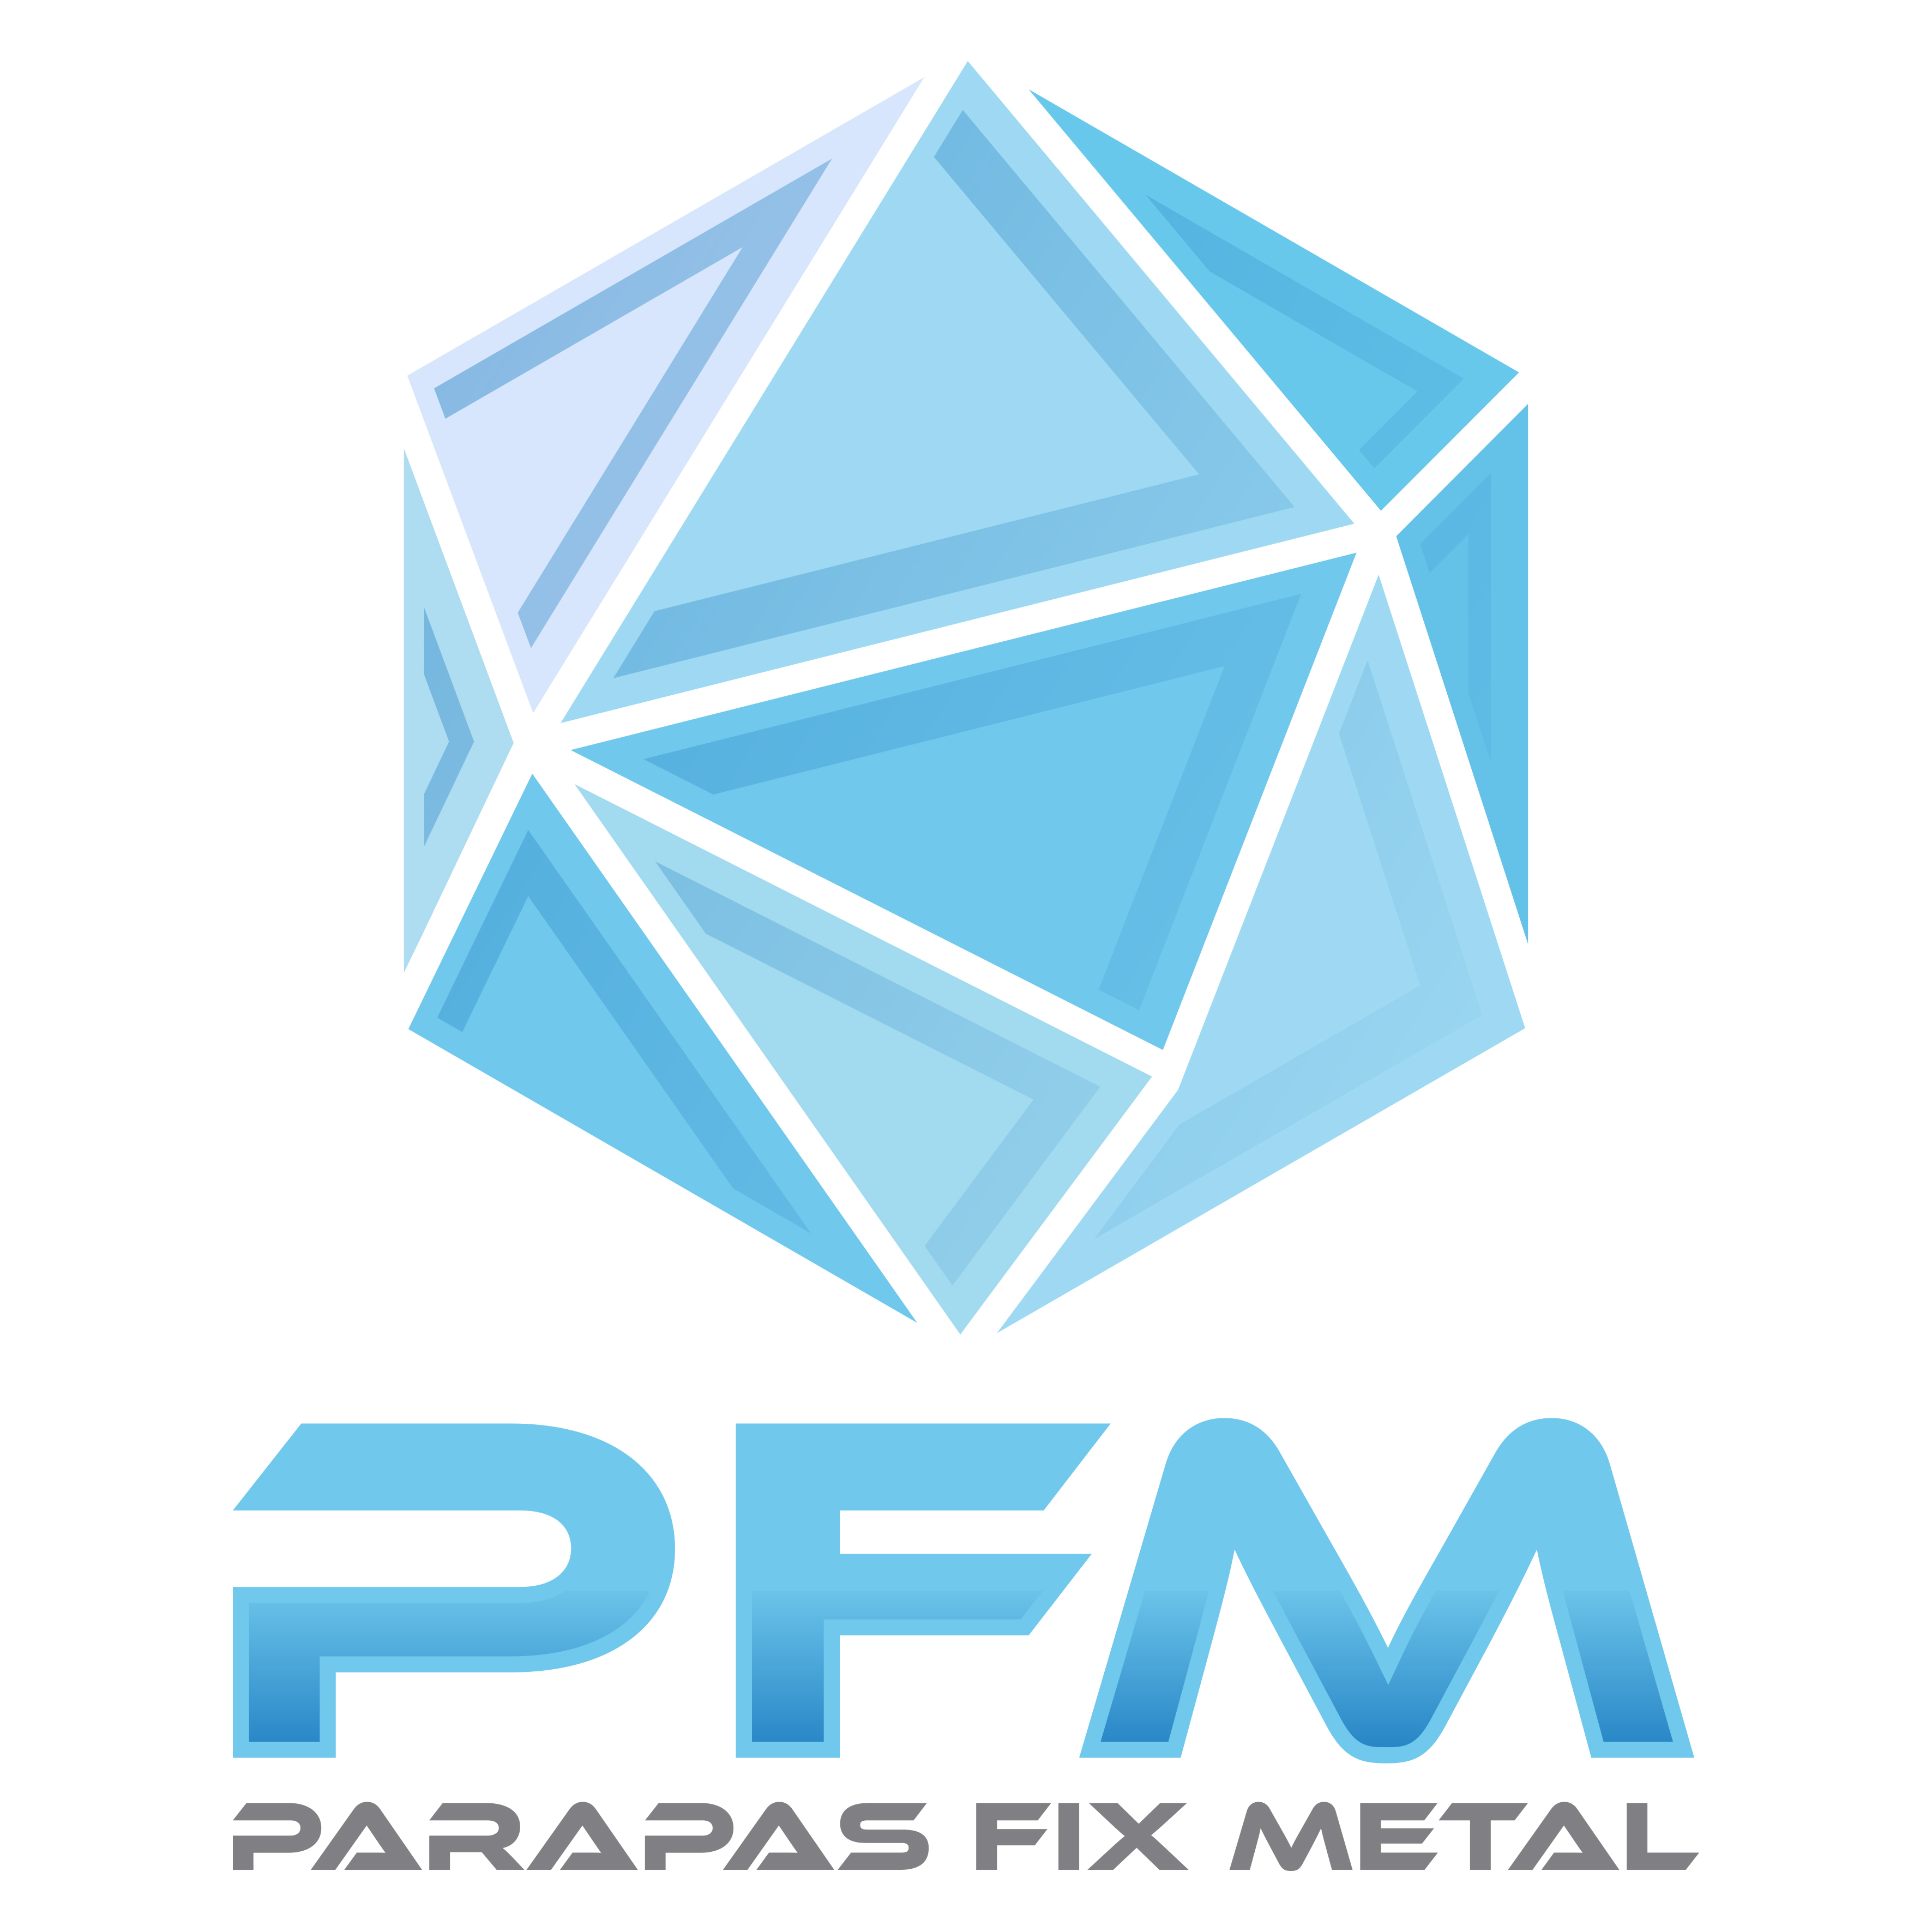 Parapas Fix Metal Logo